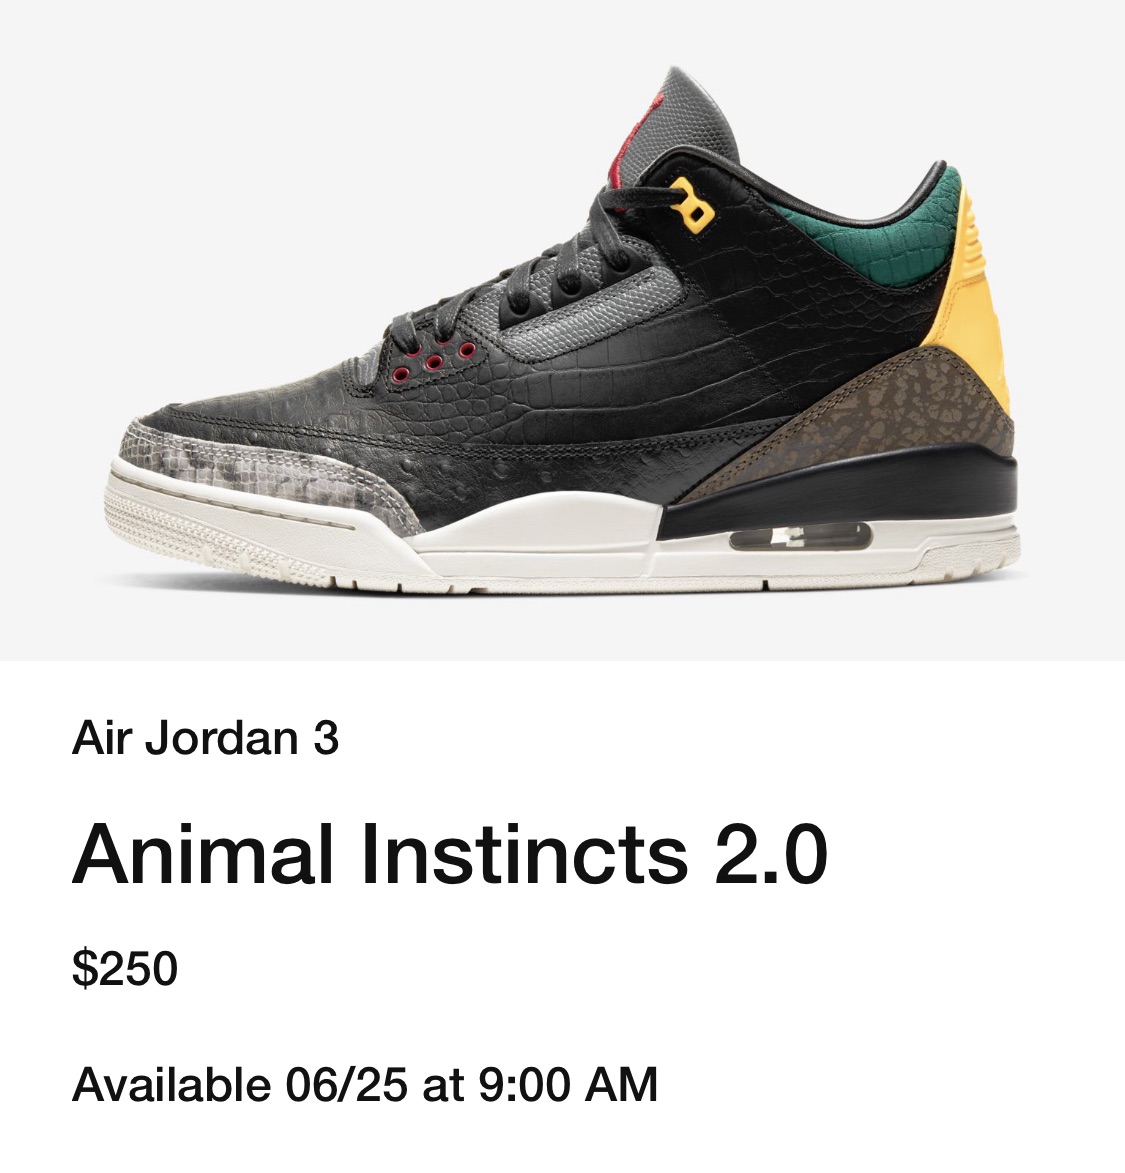 Air Jordan 3 Animal Instinct Pack 